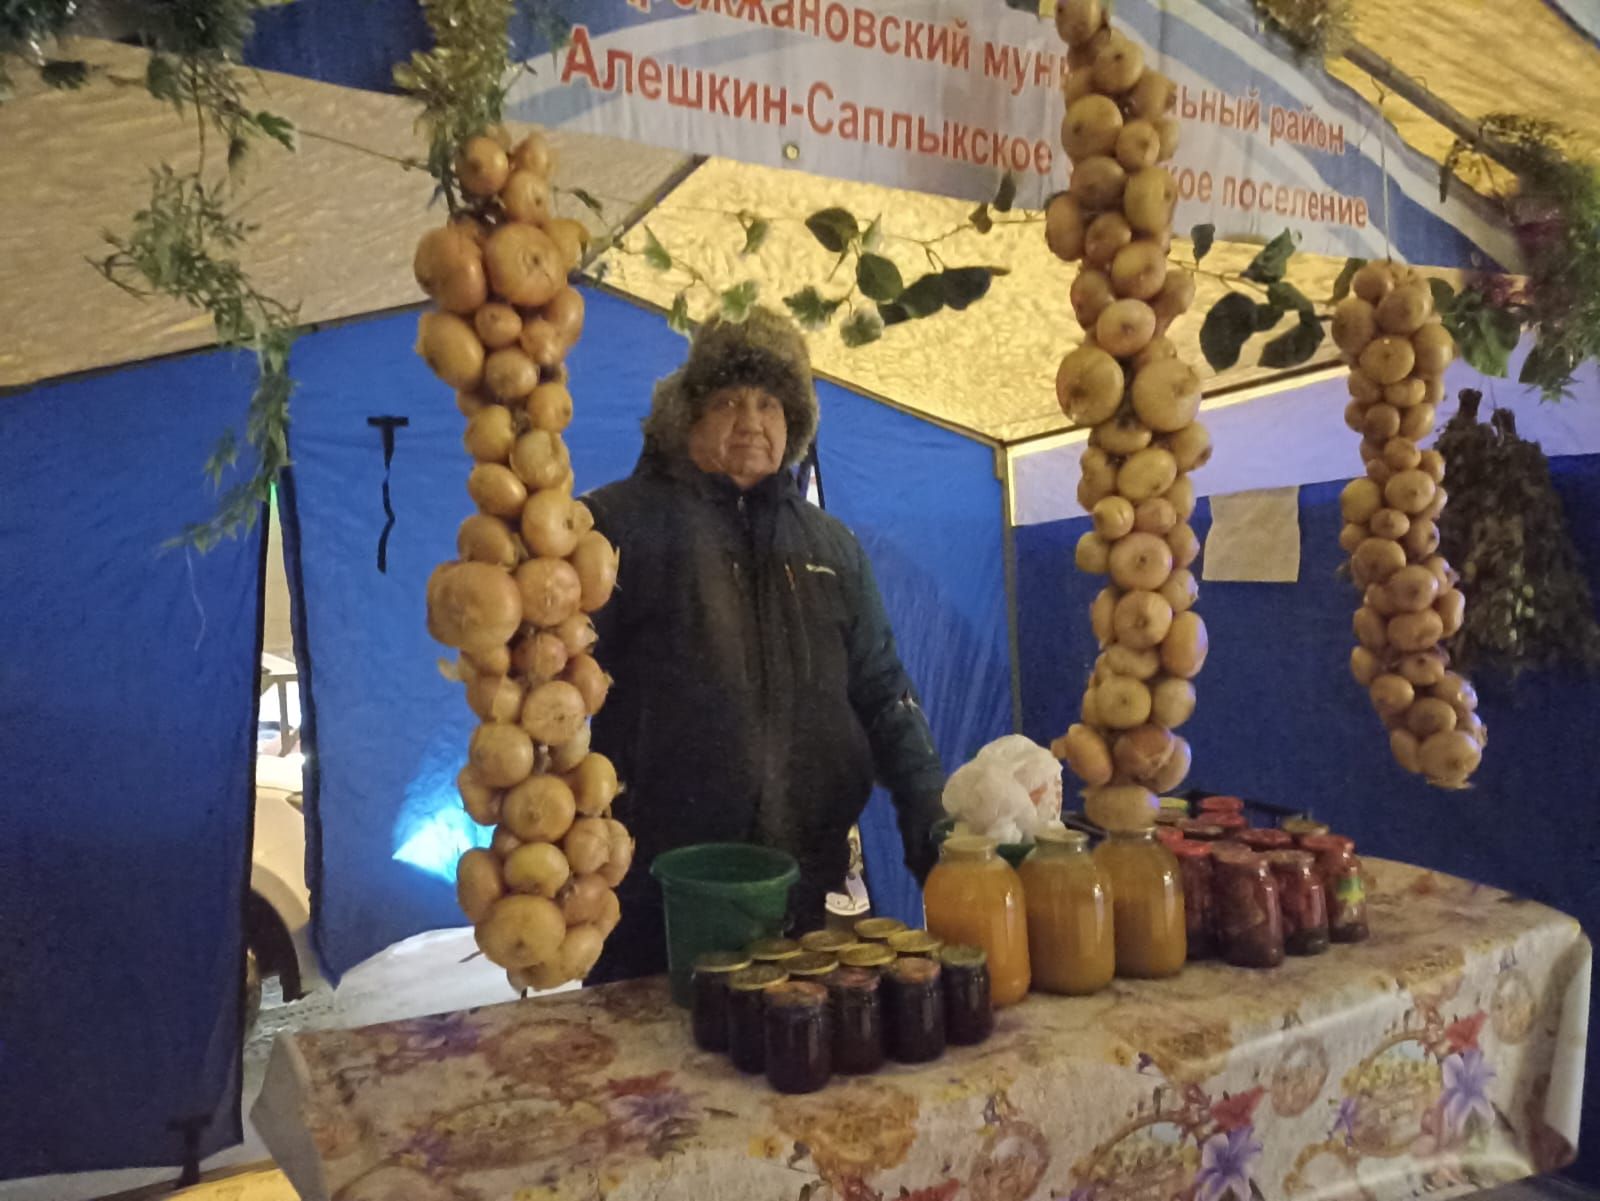 Дрожжановцы представляют предновогоднюю сельхозярмарку жителям Казани